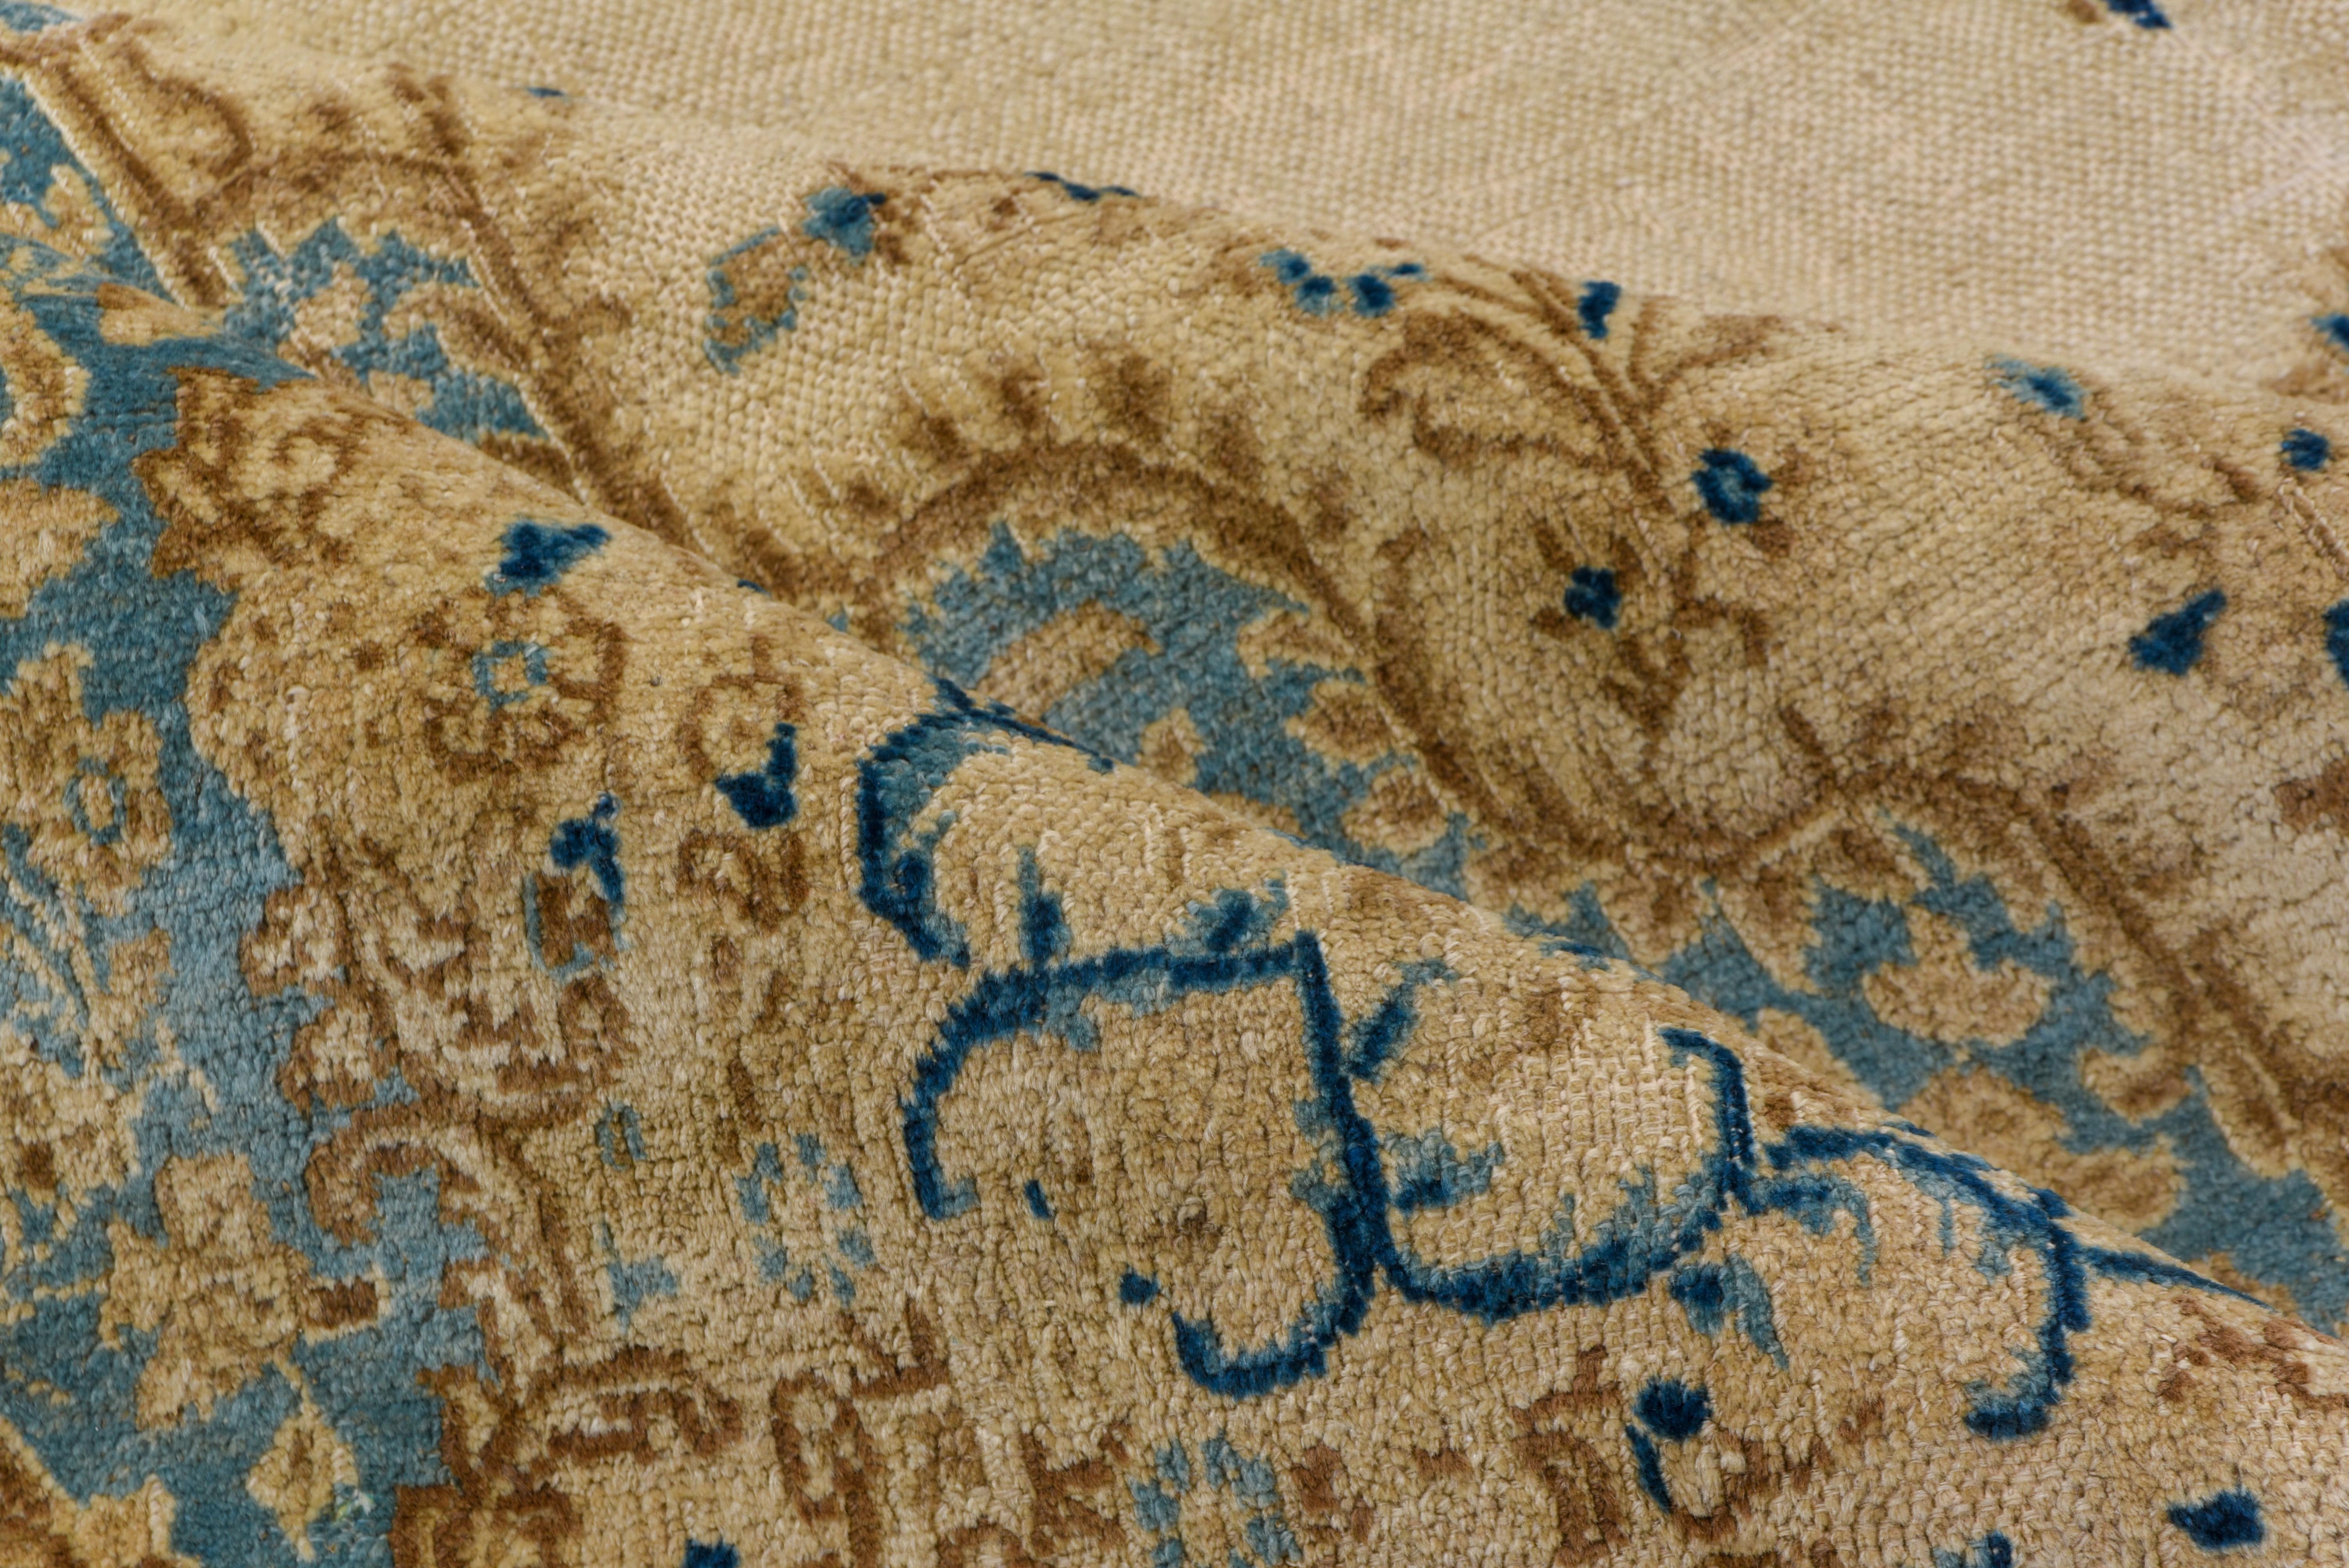 Beeinflusst von zeitgenössischen Kerman-Arbeiten, schwebt auf dem strohcremefarbenen, offenen Feld ein gestrecktes und hängendes Medaillon, das in den gemeinsamen floralen Ecken einen ovalen Effekt erzeugt. Blassblauer und elfenbeinfarbener Rand.